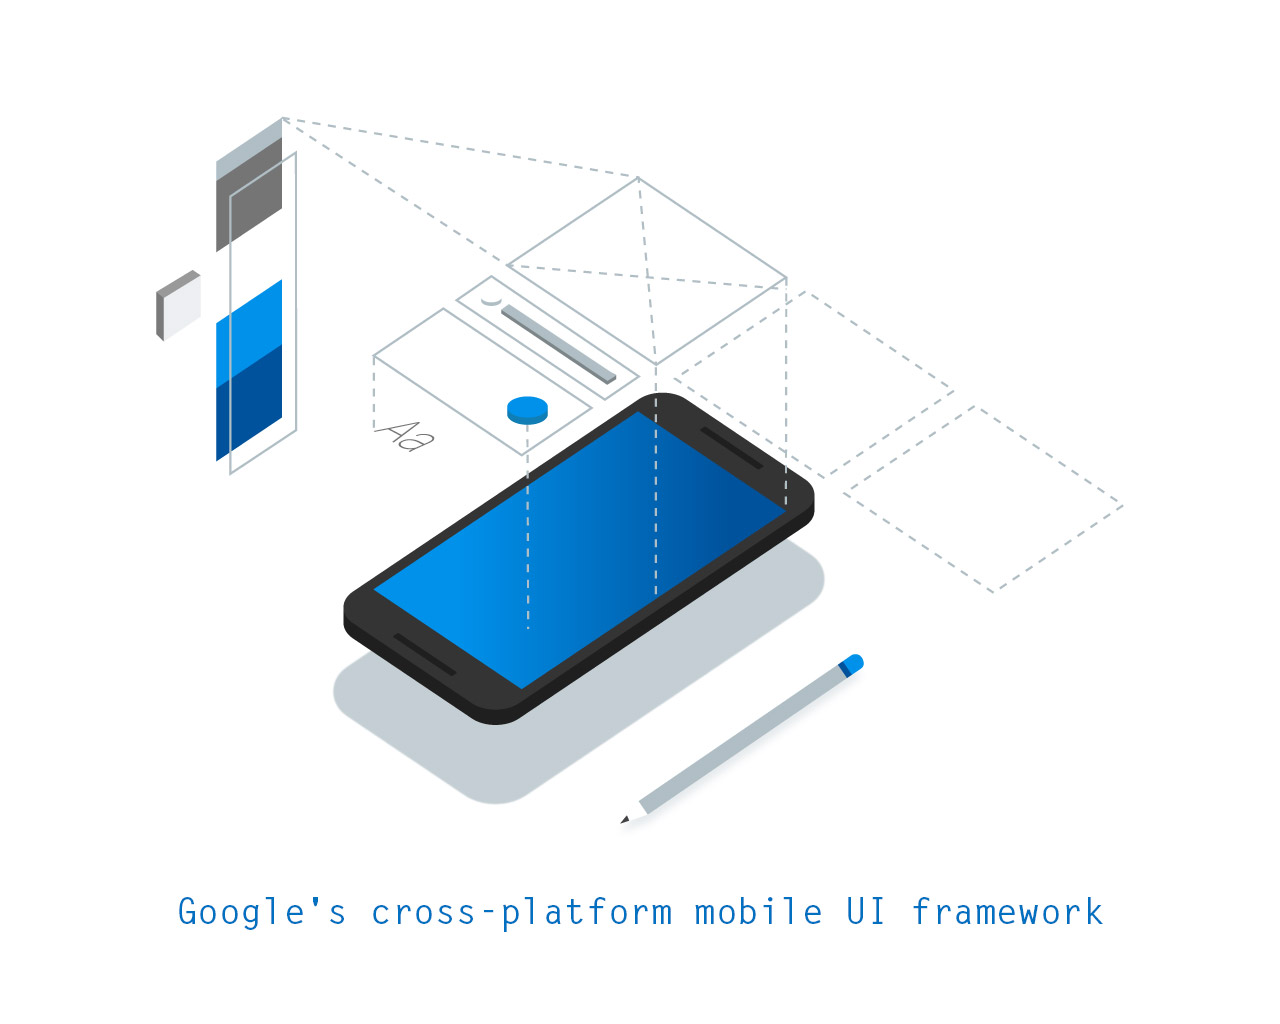 Flutter: Google's cross-platform mobile UI framework